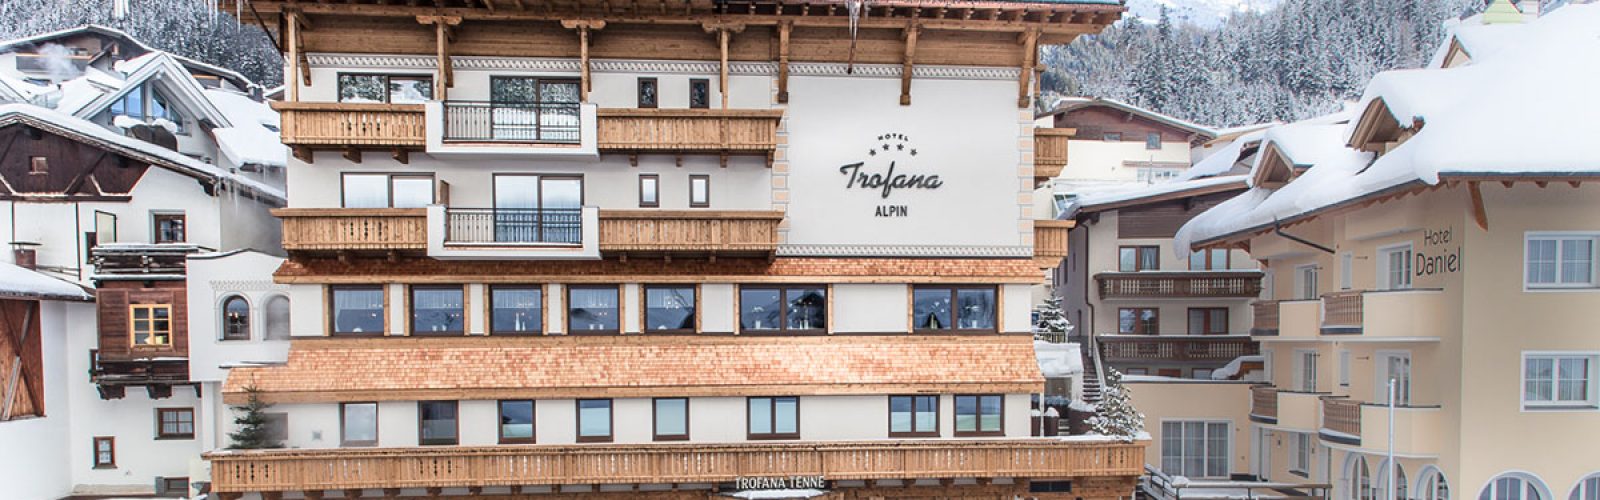 Hotel Trofana ALPIN, Ischgl-www.aktivostrig.dk